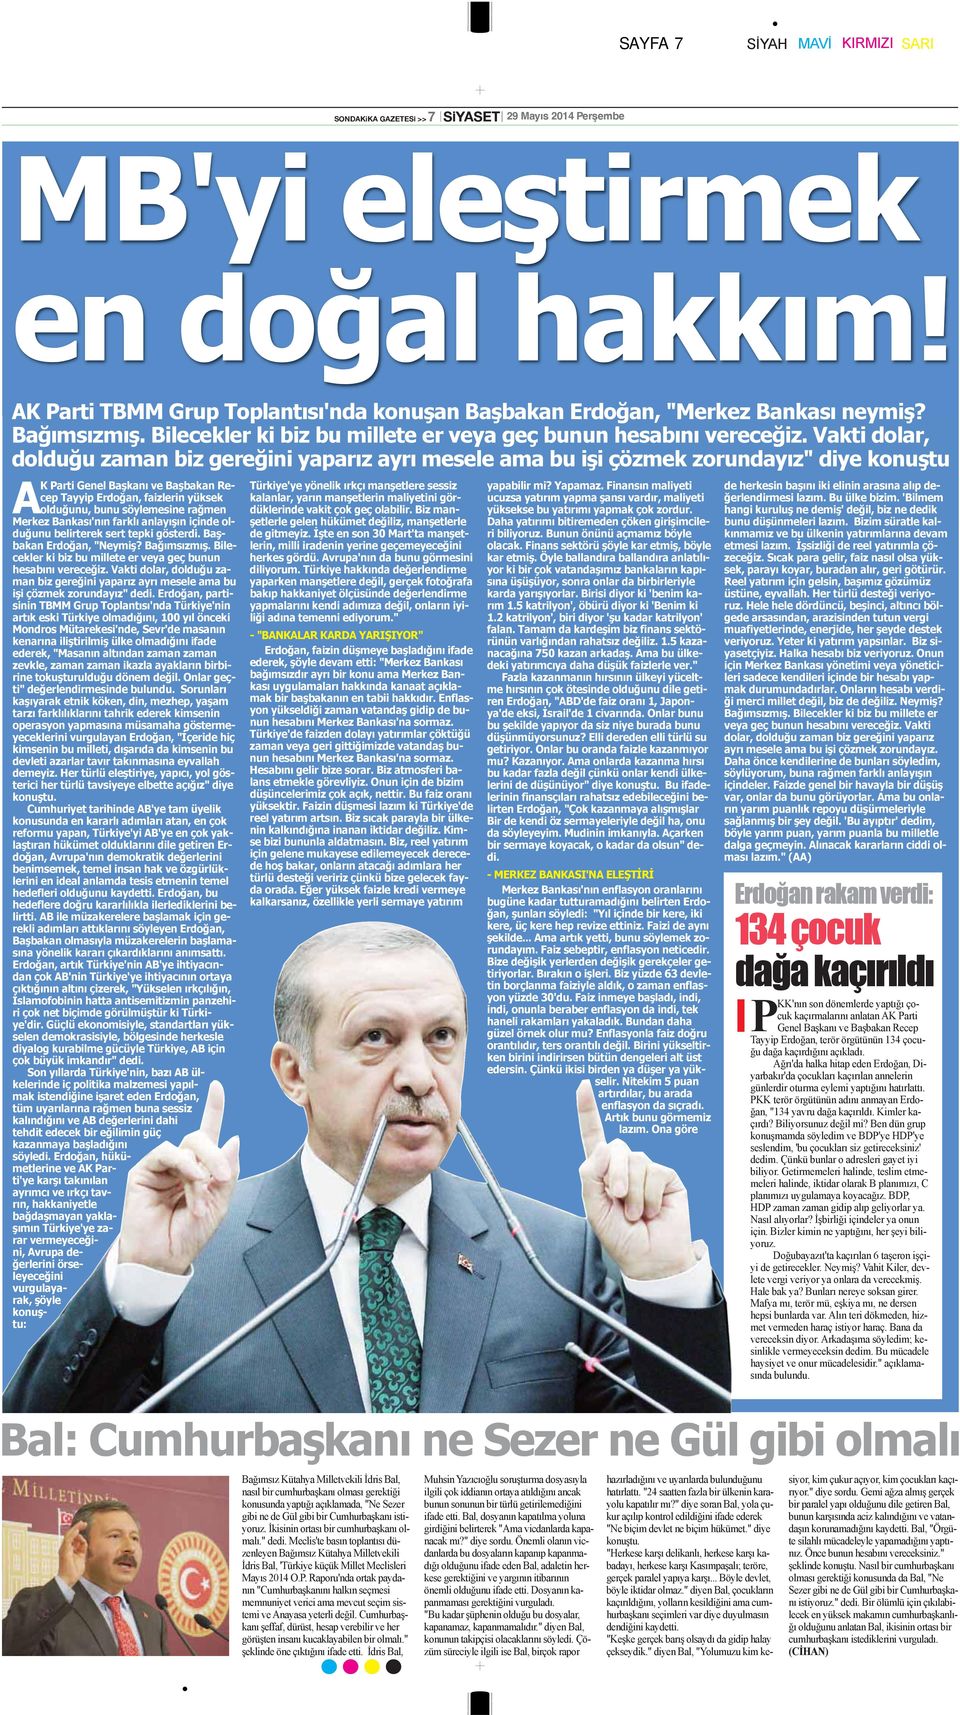 Vakti dolar, dolduğu zaman biz gereğini yaparız ayrı mesele ama bu işi çözmek zorundayız" diye konuştu AK Parti Genel Başkanı ve Başbakan Recep Tayyip Erdoğan, faizlerin yüksek olduğunu, bunu